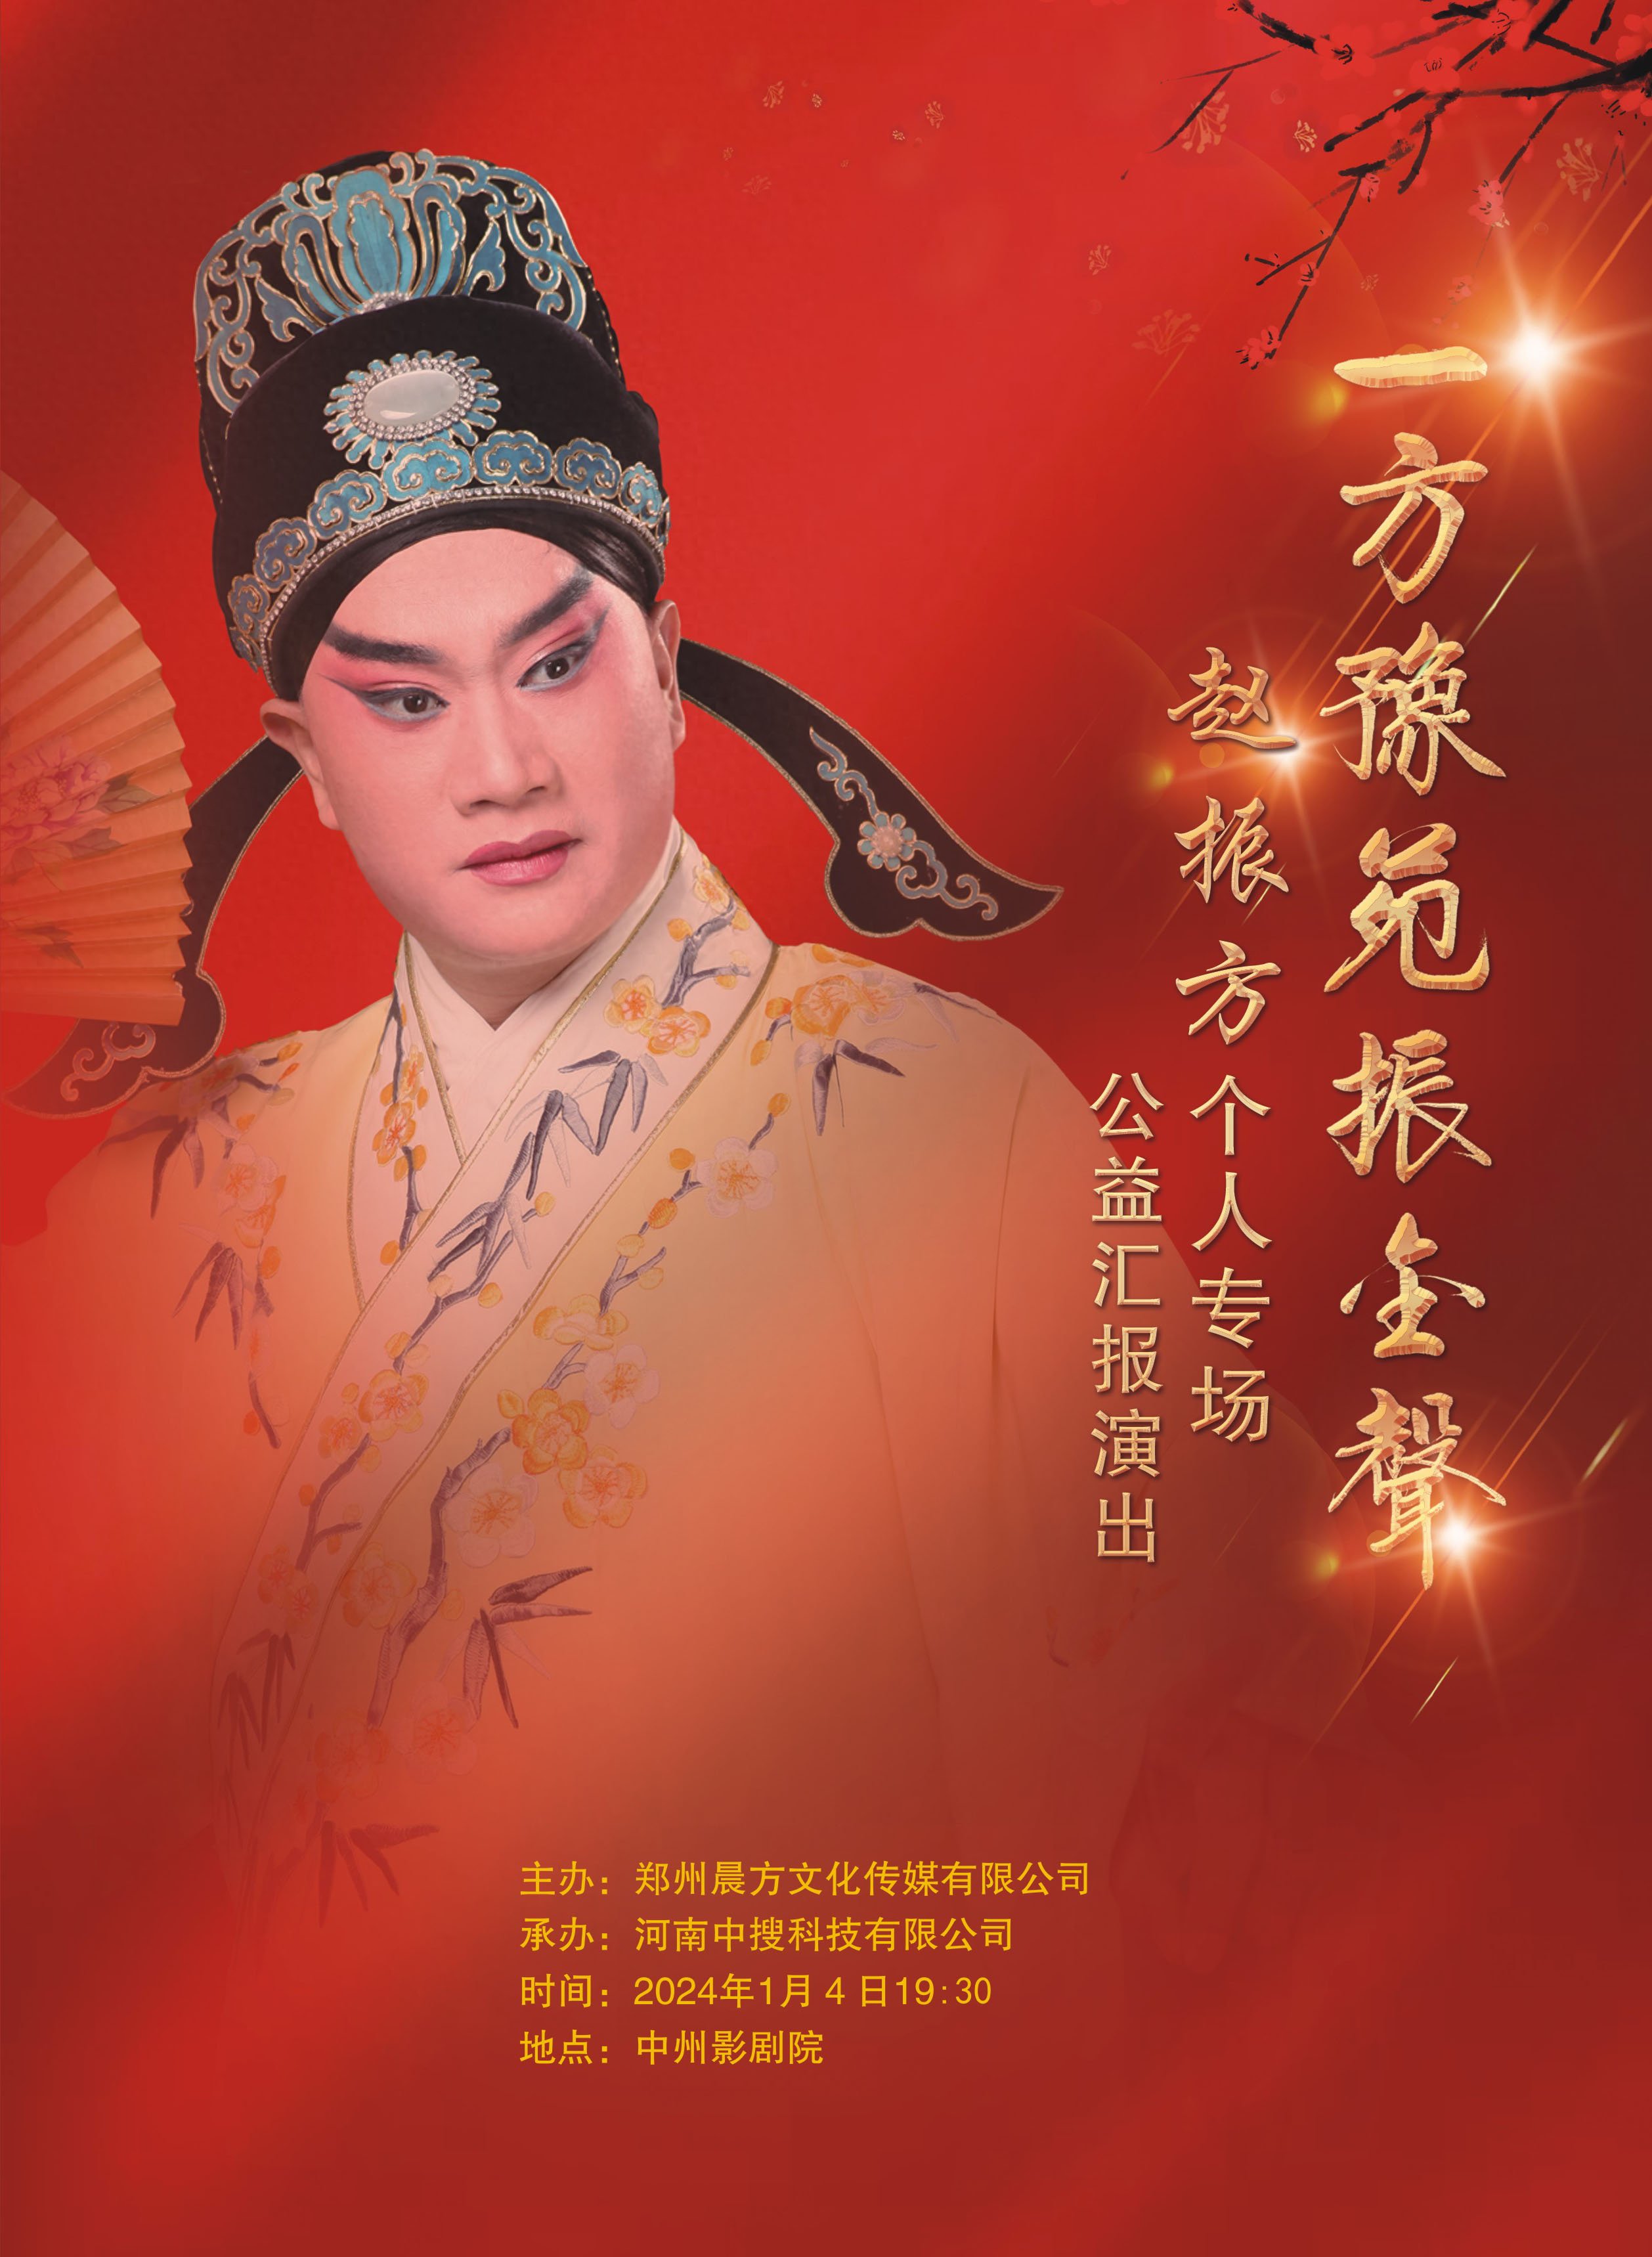 河南豫剧院青年团演员吴素真入选2022年全国戏曲表演领军人才培养计划